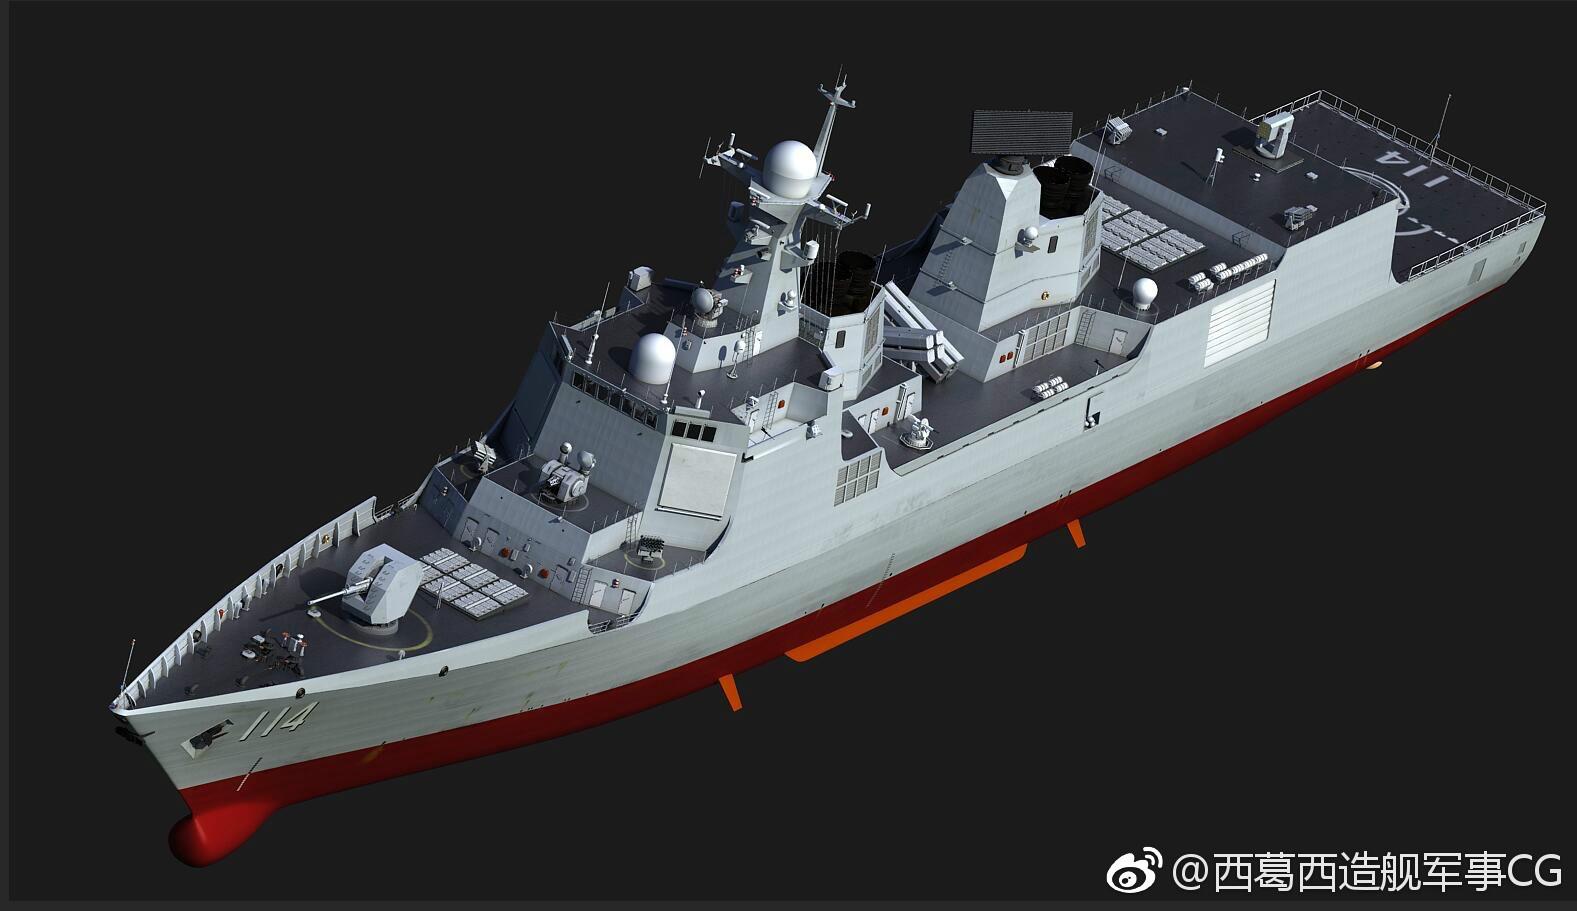 又添新成员 中国新052e型驱逐舰长这样?